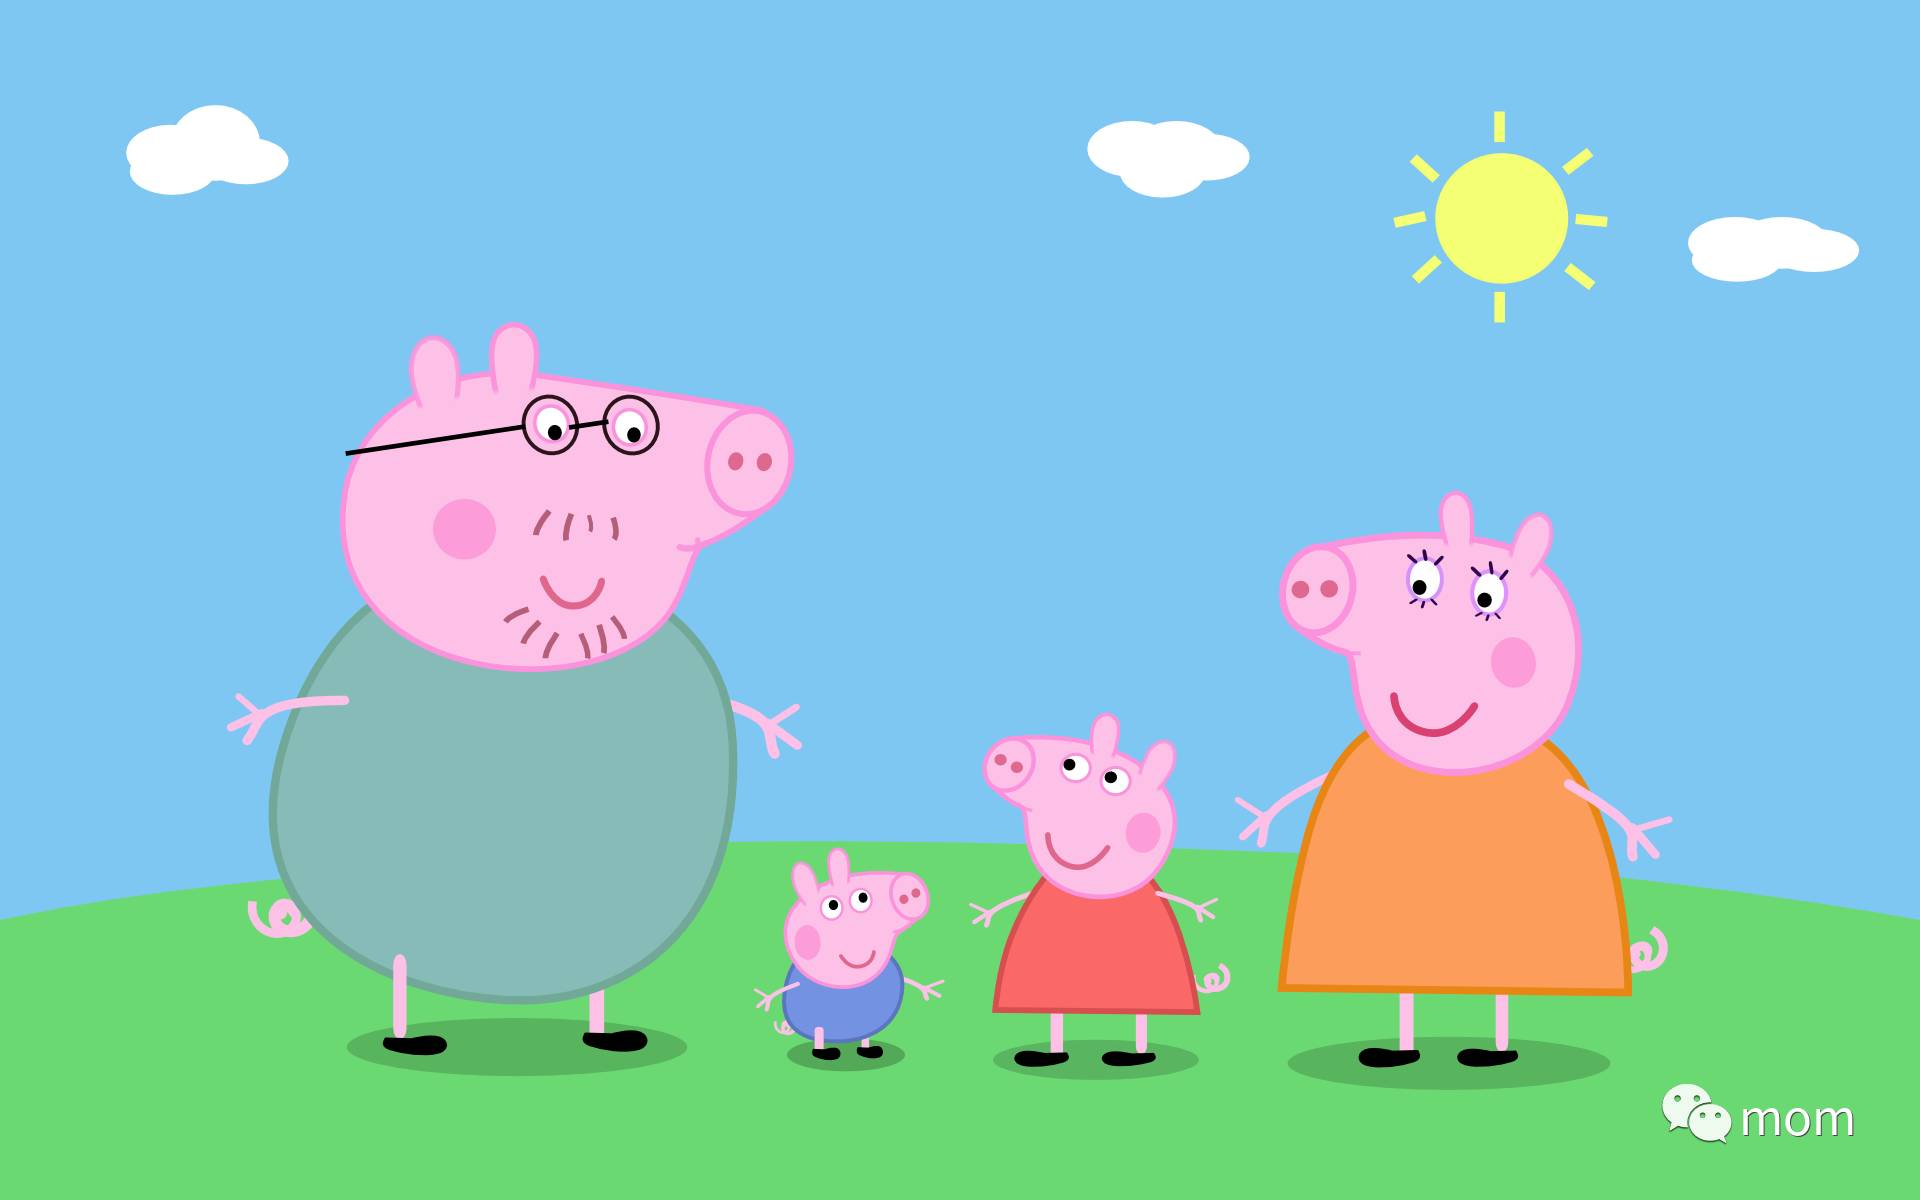 小猪佩奇Peppa Pig1-6季全集高清1080P英文无字幕部分1~5季MP3及台词剧本 - 妈妈早教网